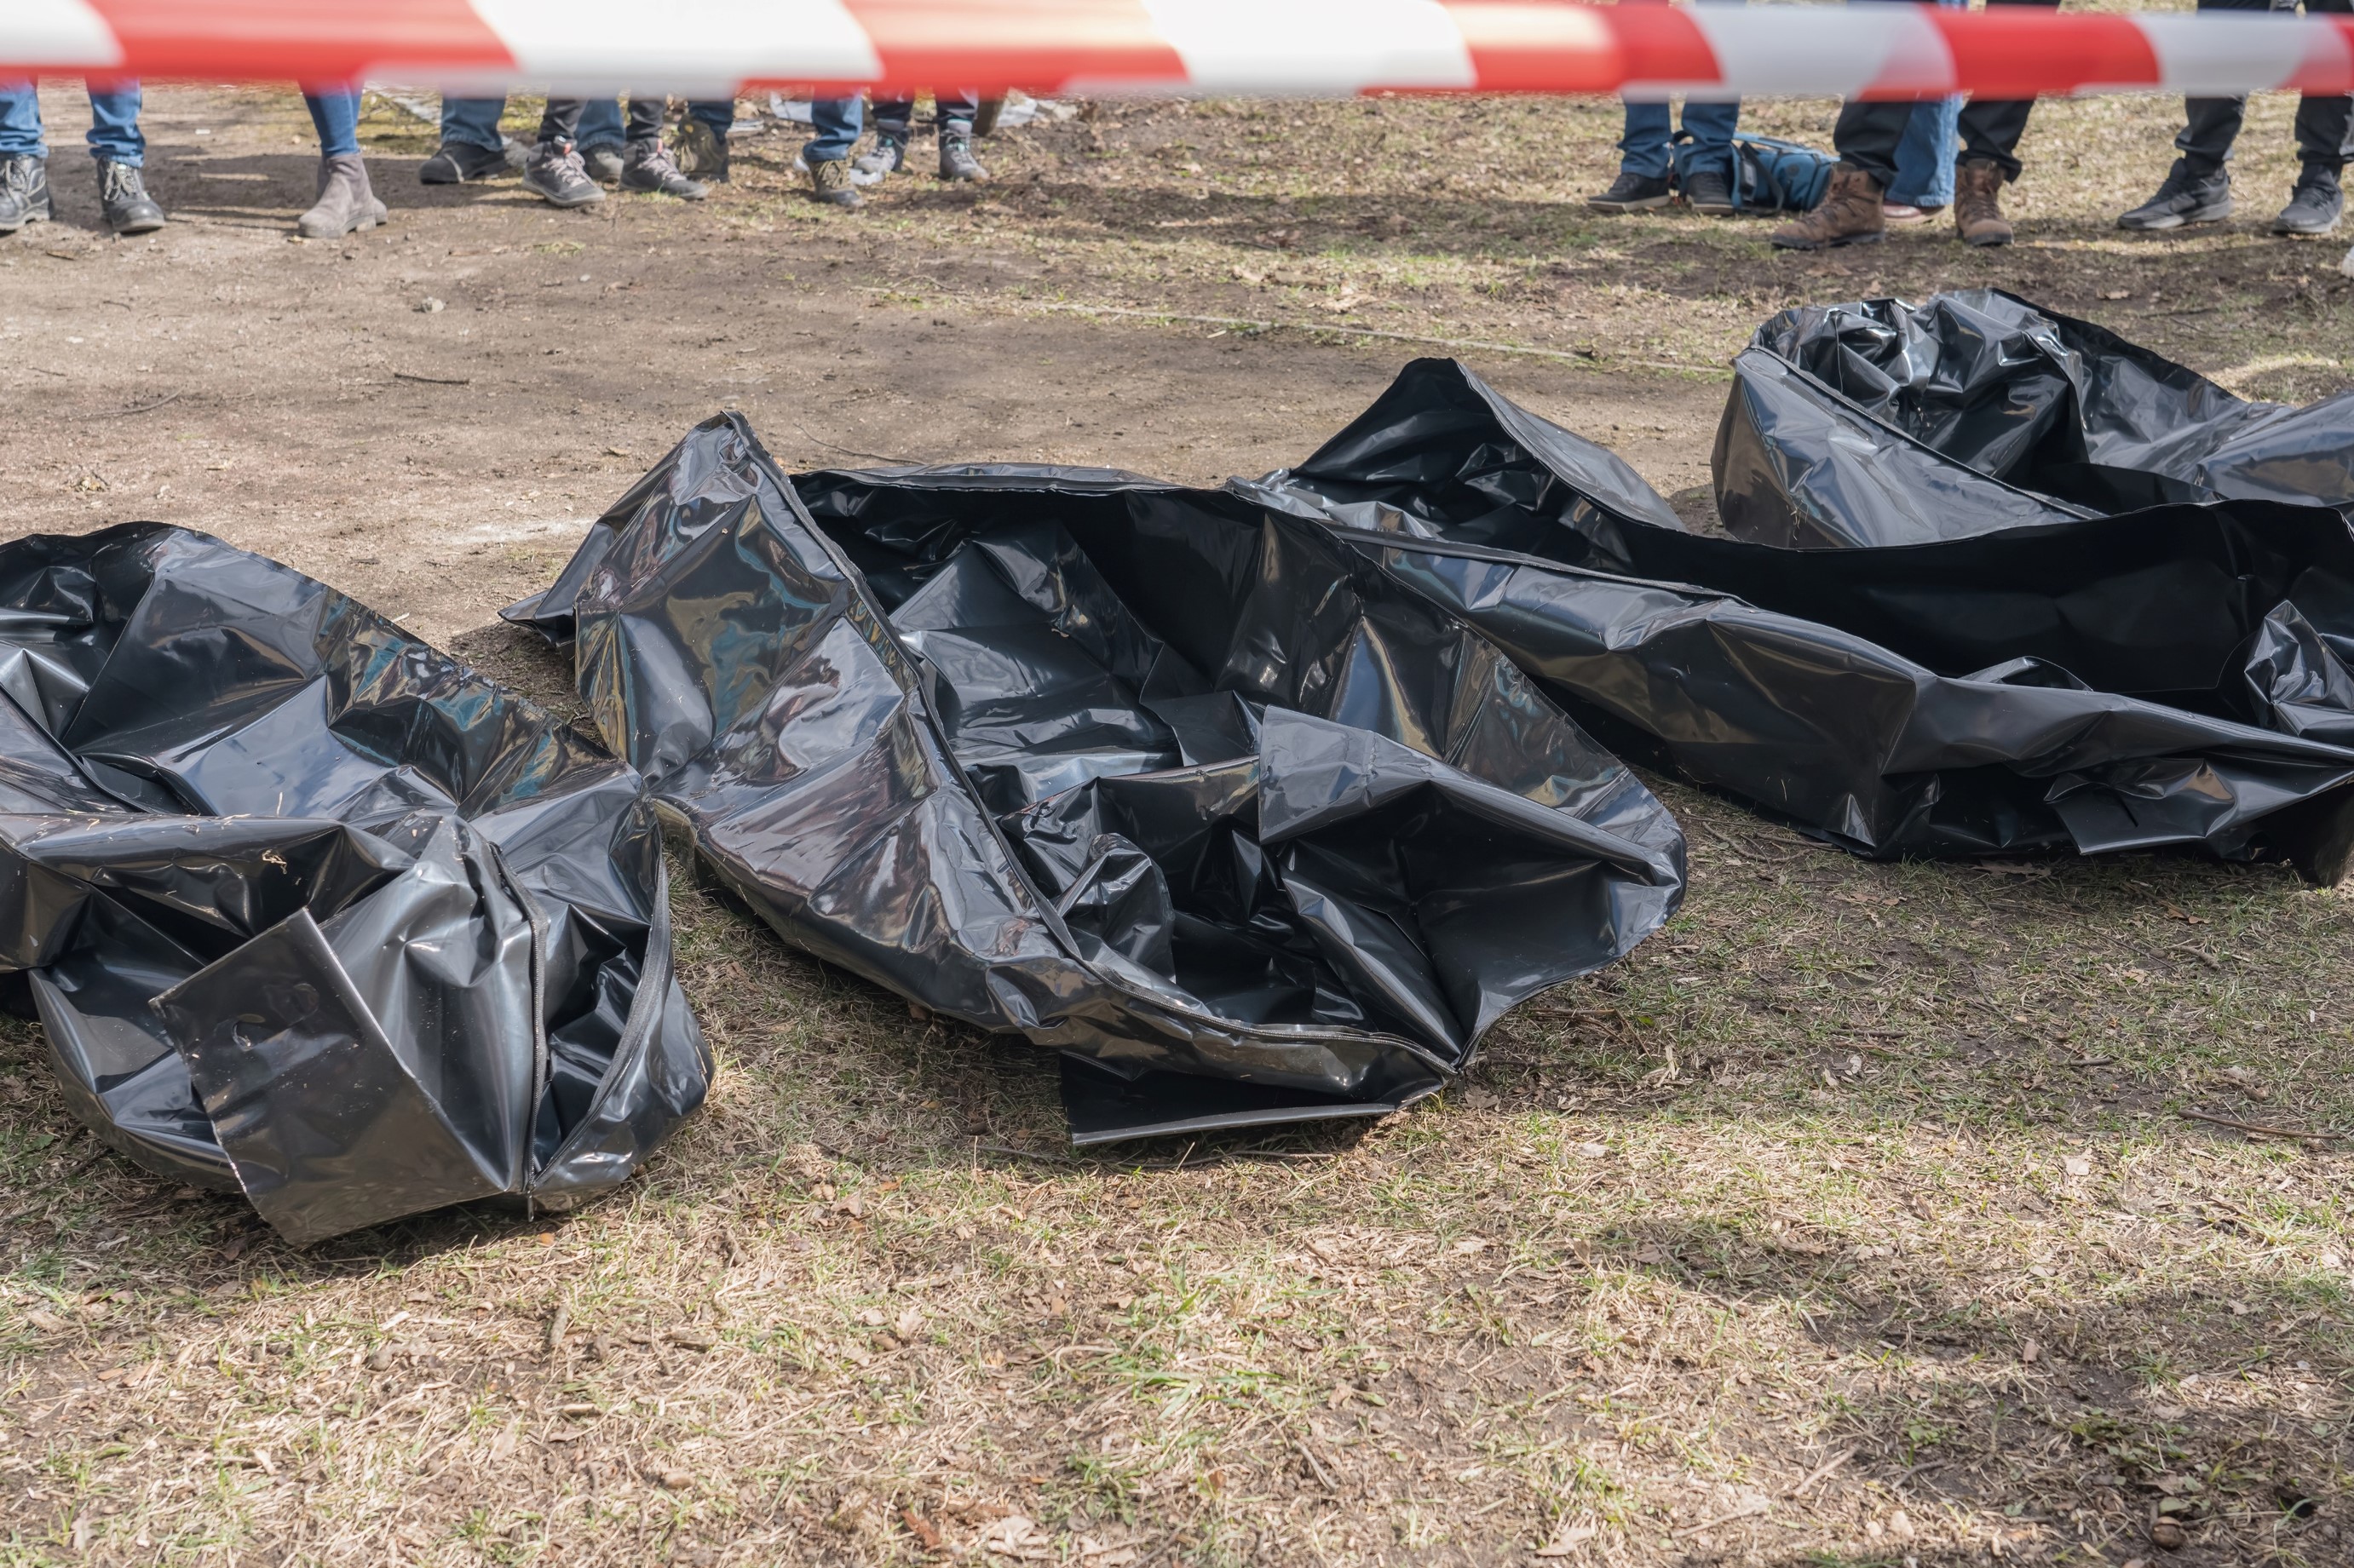 México hoy: hallazgo de cuerpos en bolsas en El Salto, Jalisco. Autoridades iniciaron investigación.